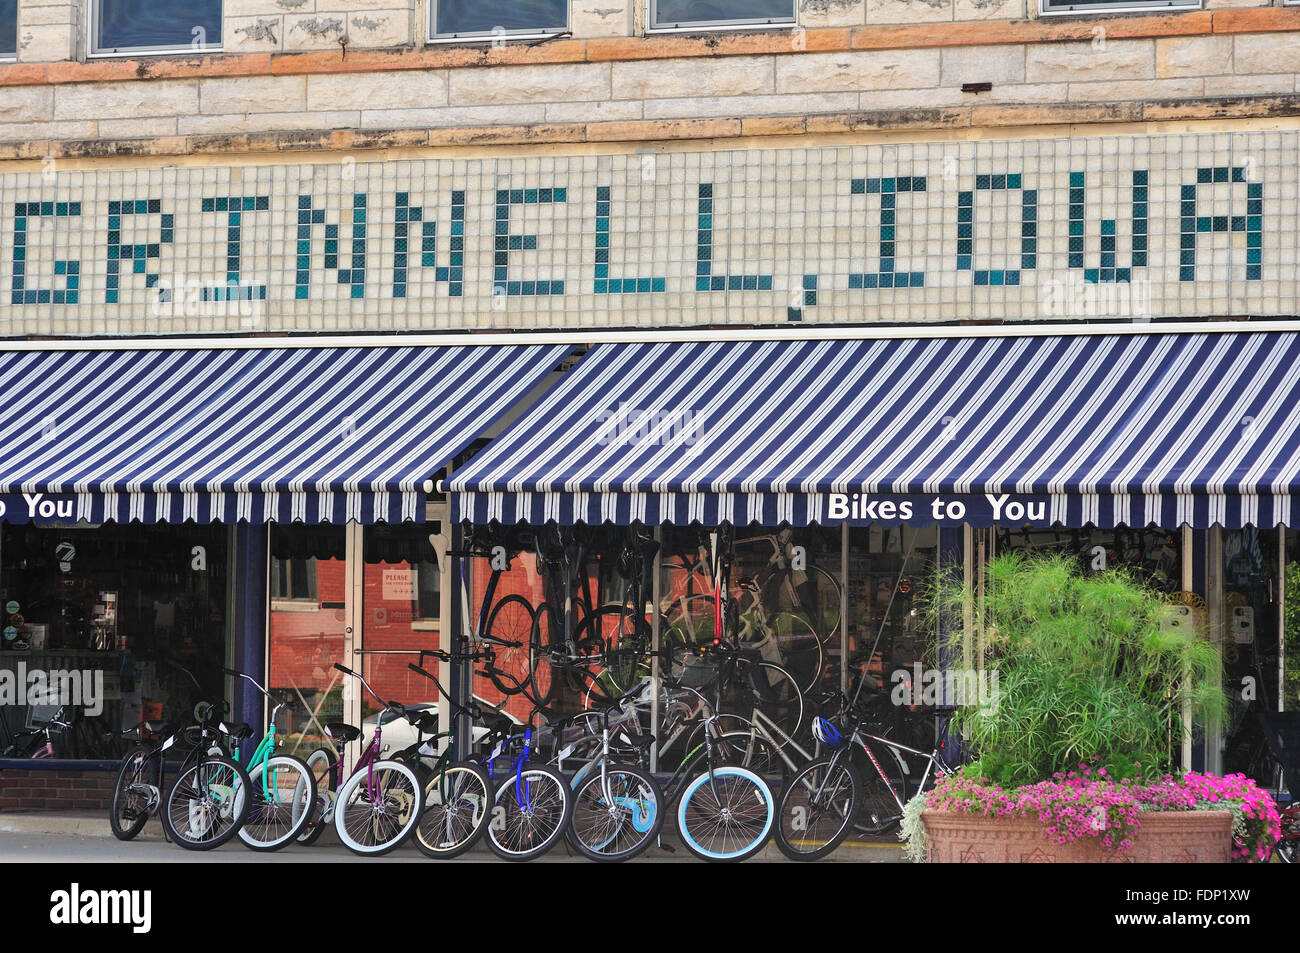 Un magasin de vélo bien entretenu à Grinnell, Iowa sur une rue principale de la petite ville de la communauté du Midwest. Grinnell, Iowa, États-Unis. Banque D'Images